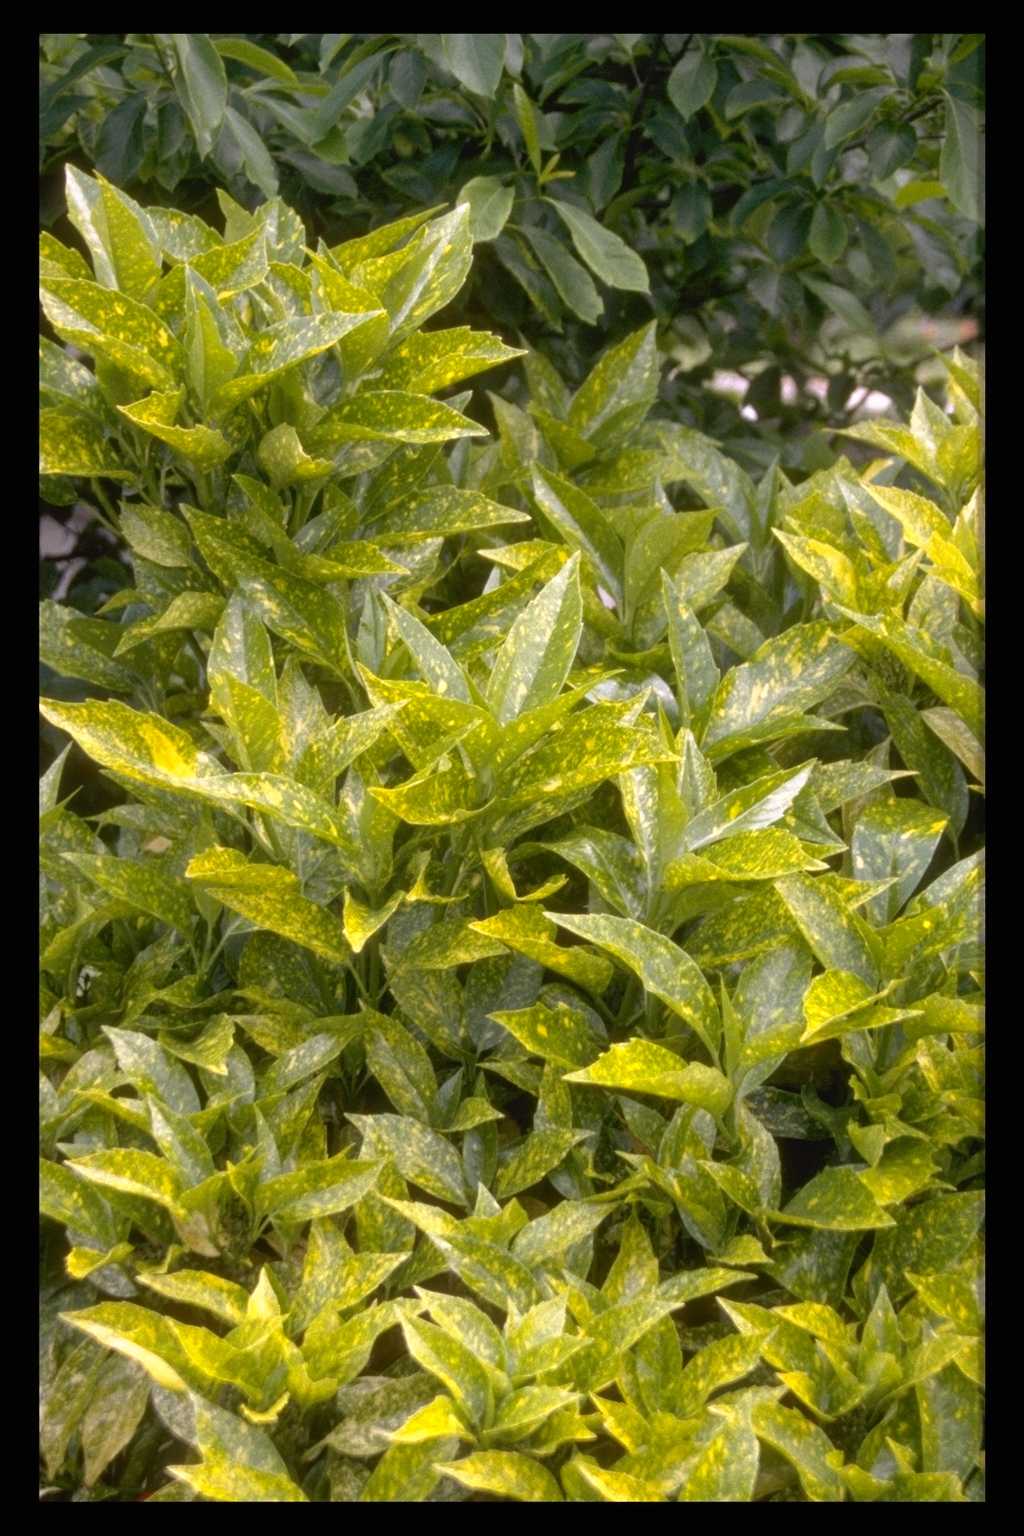 Aucuba japonica ‘Variegata’